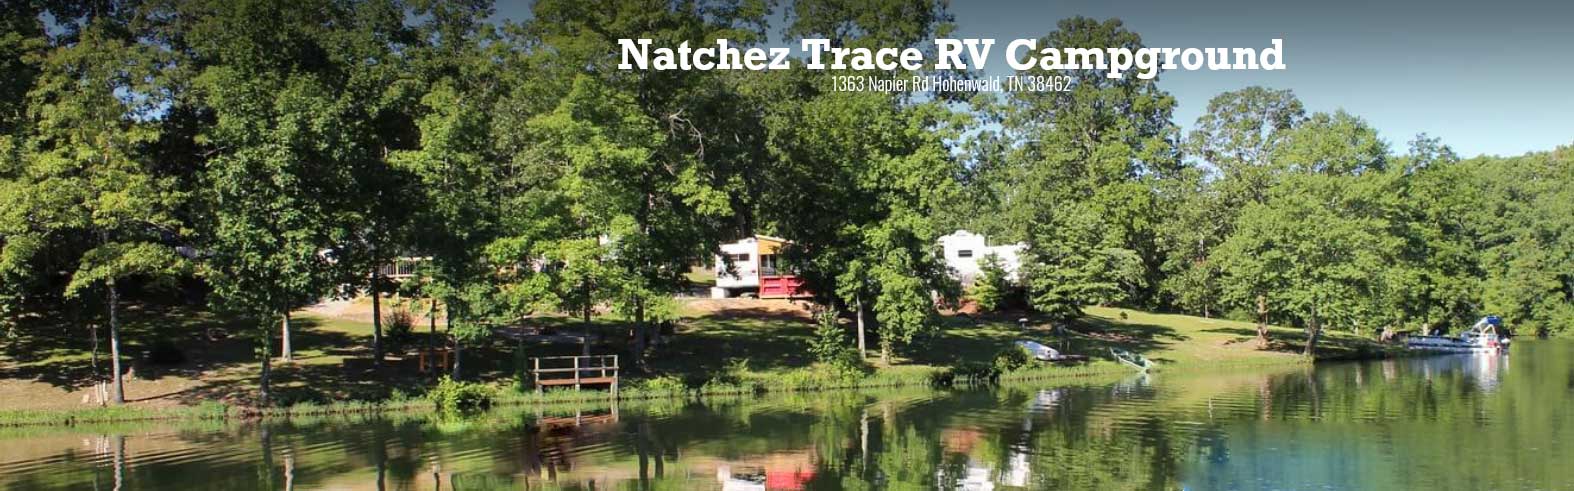 Natchez Trace RV Campground